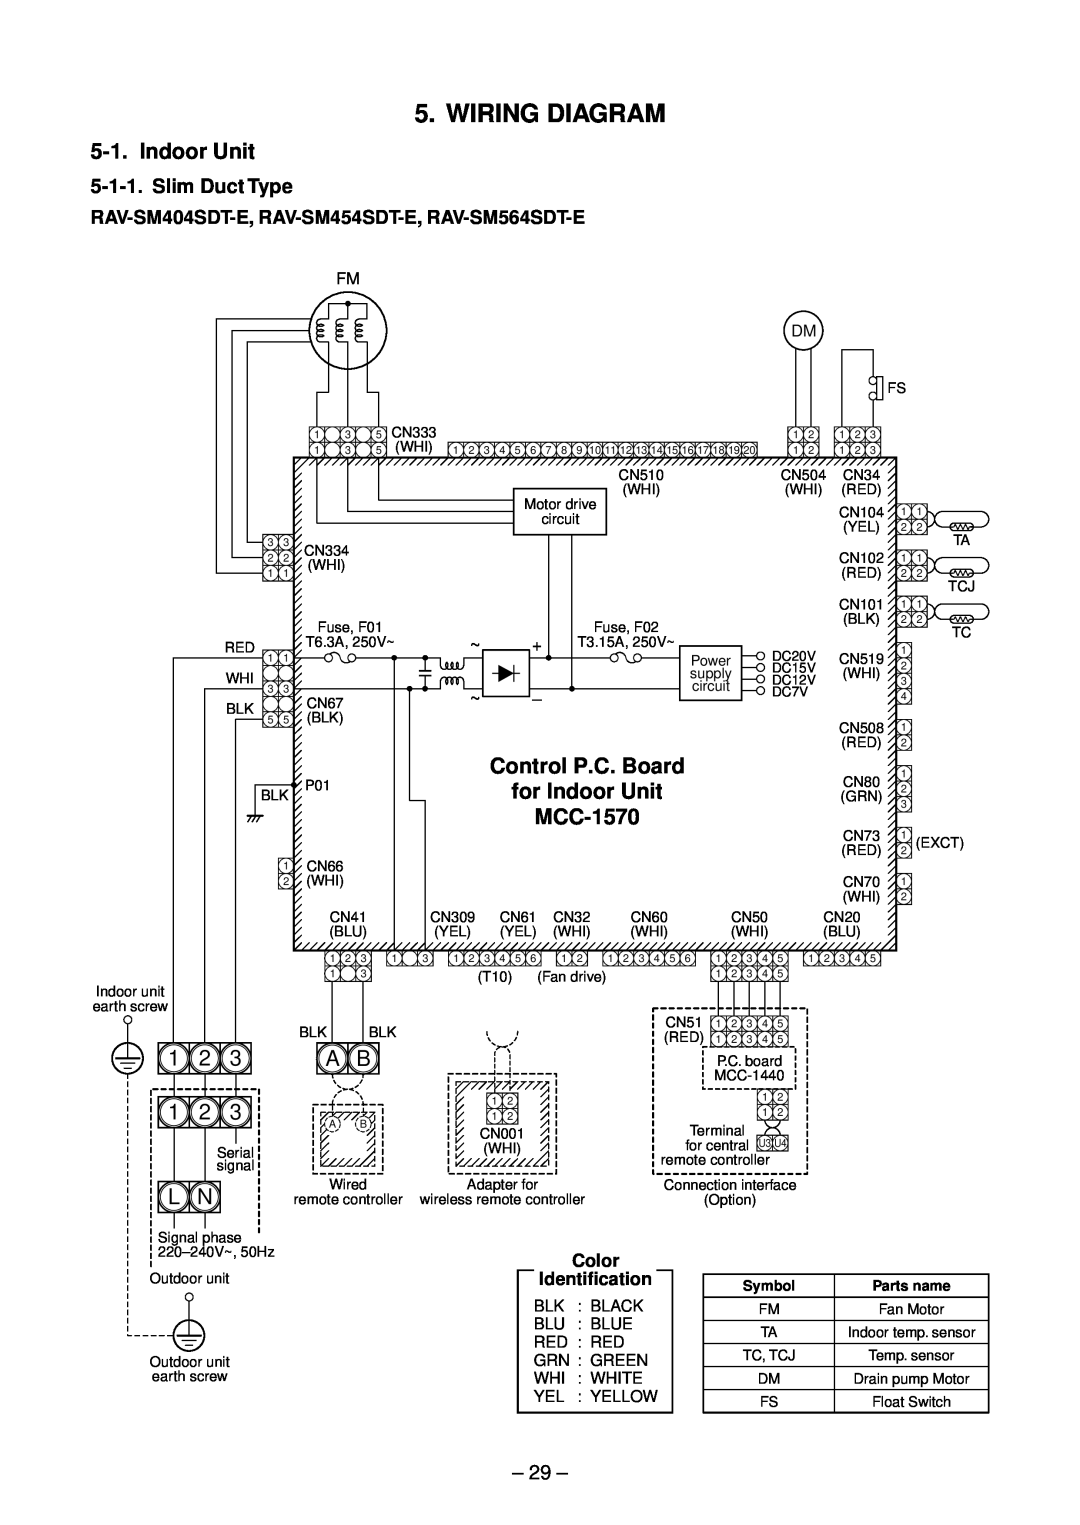 Toshiba RAV-SP804ATZ-E Wiring Diagram, Control P.C. Board, for Indoor Unit, MCC-1570, Slim Duct Type, Symbol 